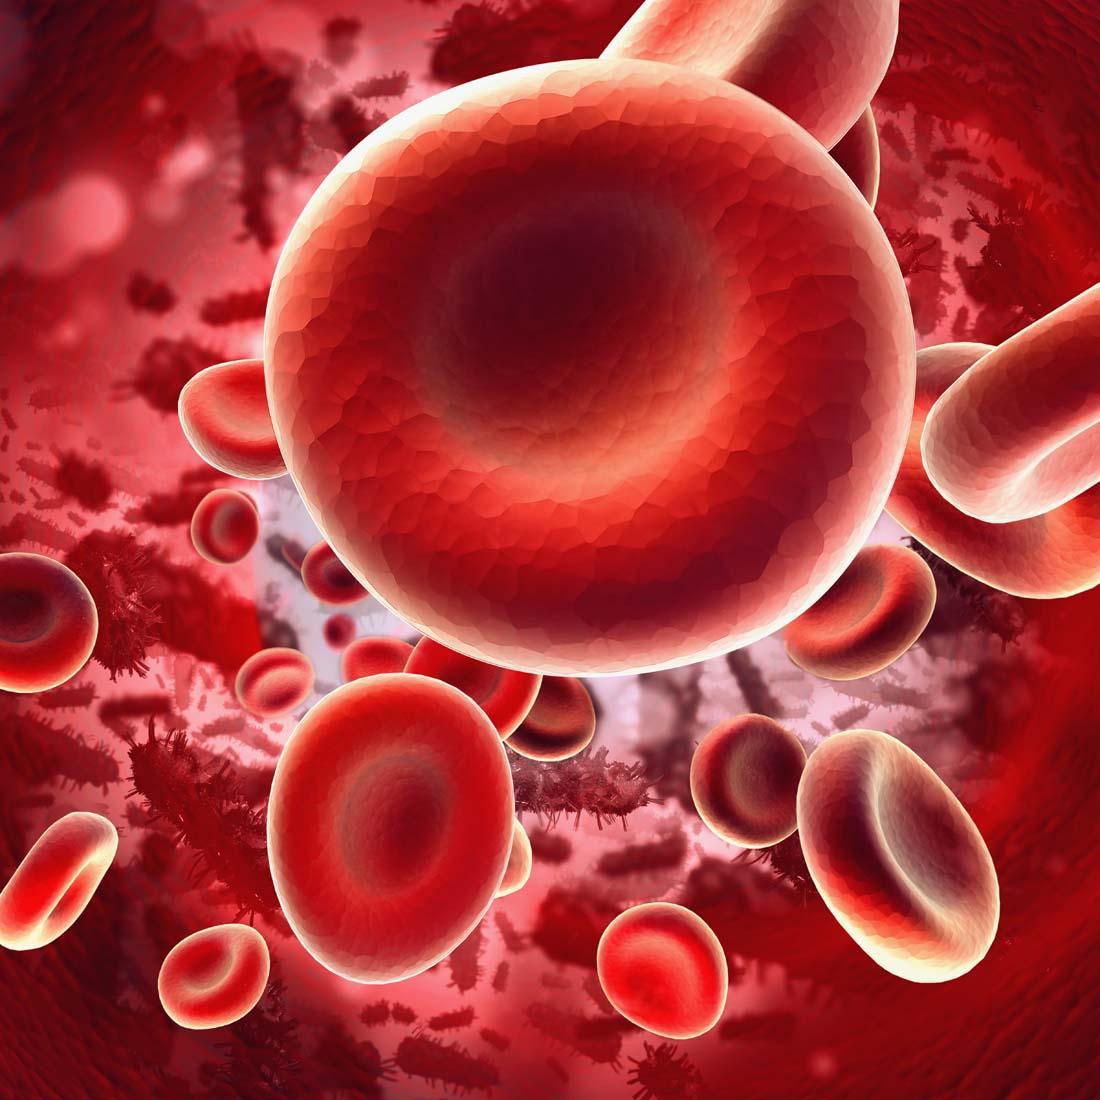 血同脉、爱同行 ——2019年单采血小板献血者保留交流活动顺利开展-中国输血协会